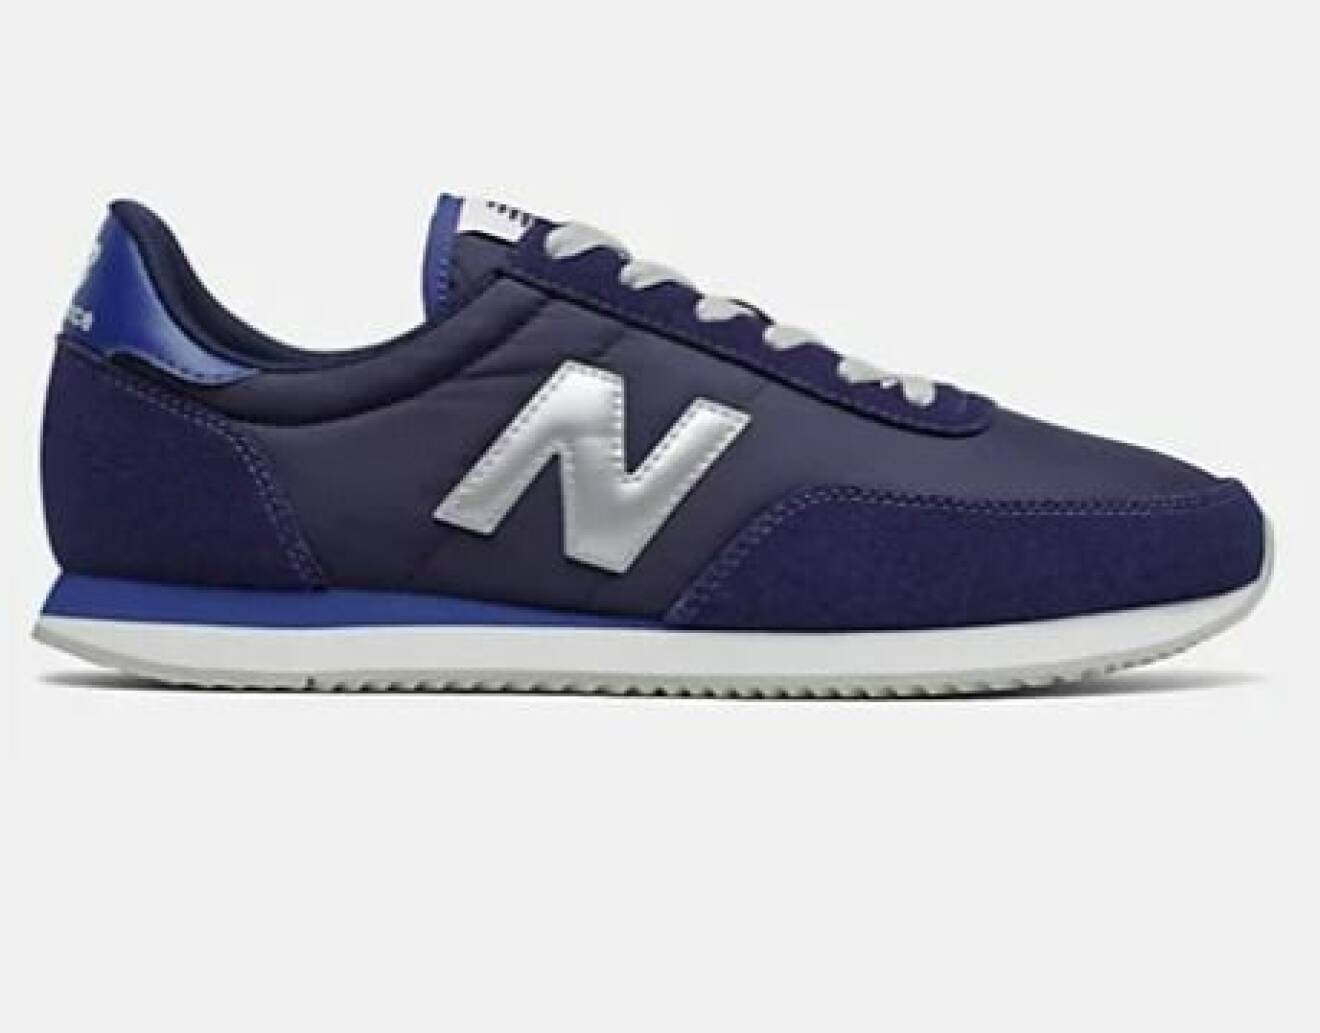 Marinblå sneakers i nylon och mocka md silverfärgad logga. Sneakers från New balance.